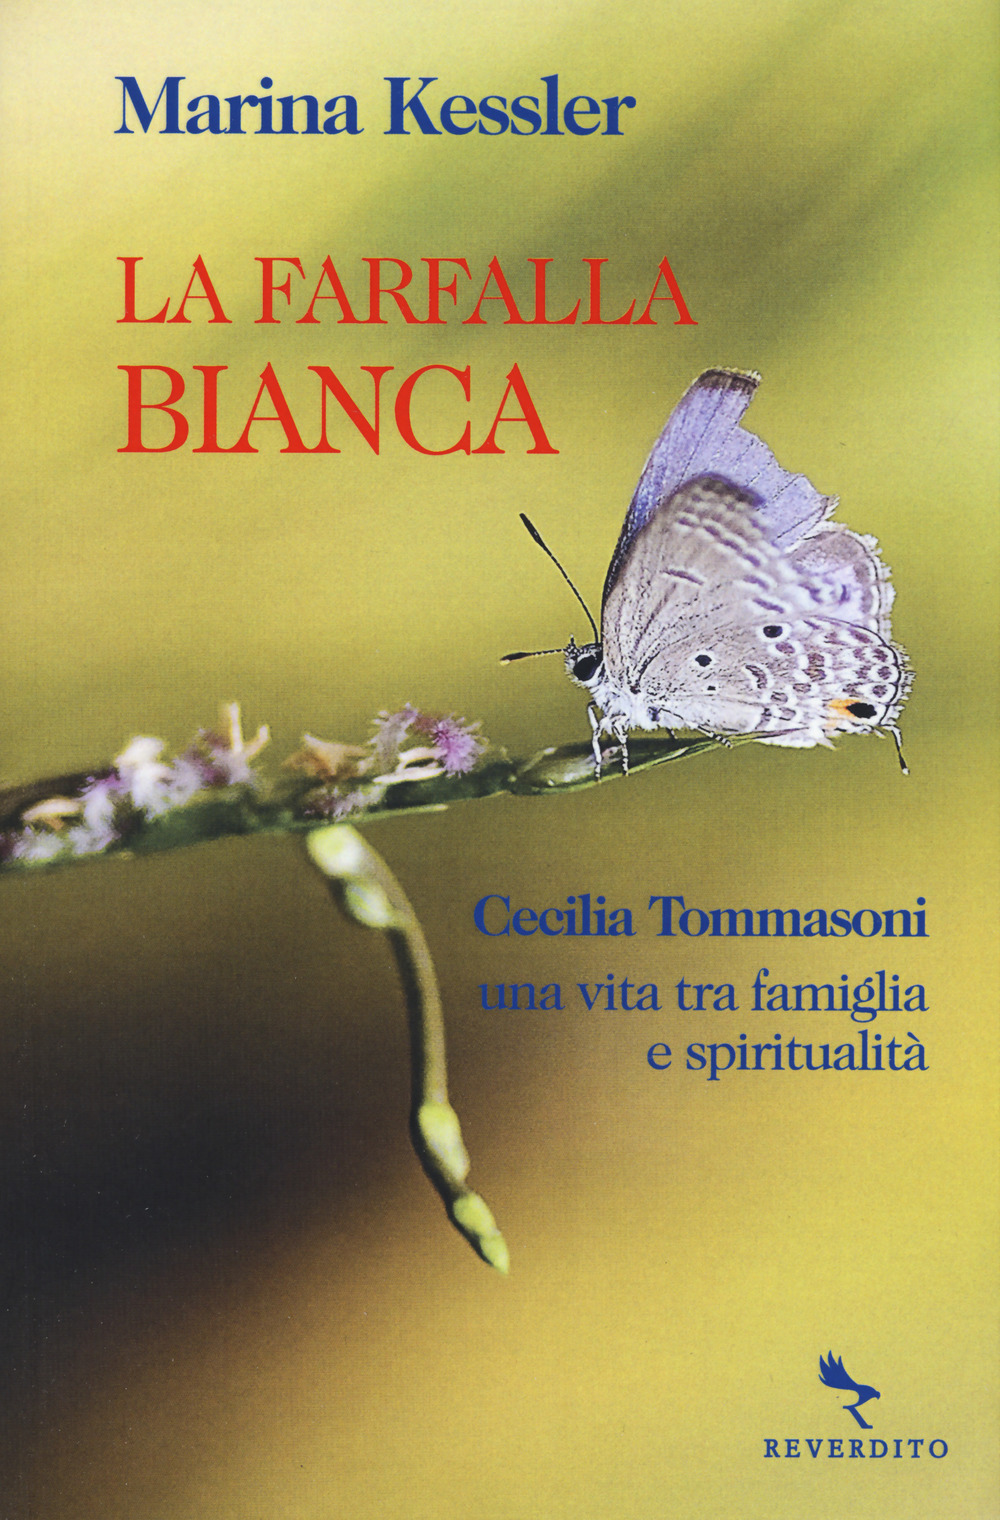 La farfalla bianca. Cecilia Tommasoni, una vita tra famiglia e spiritualità